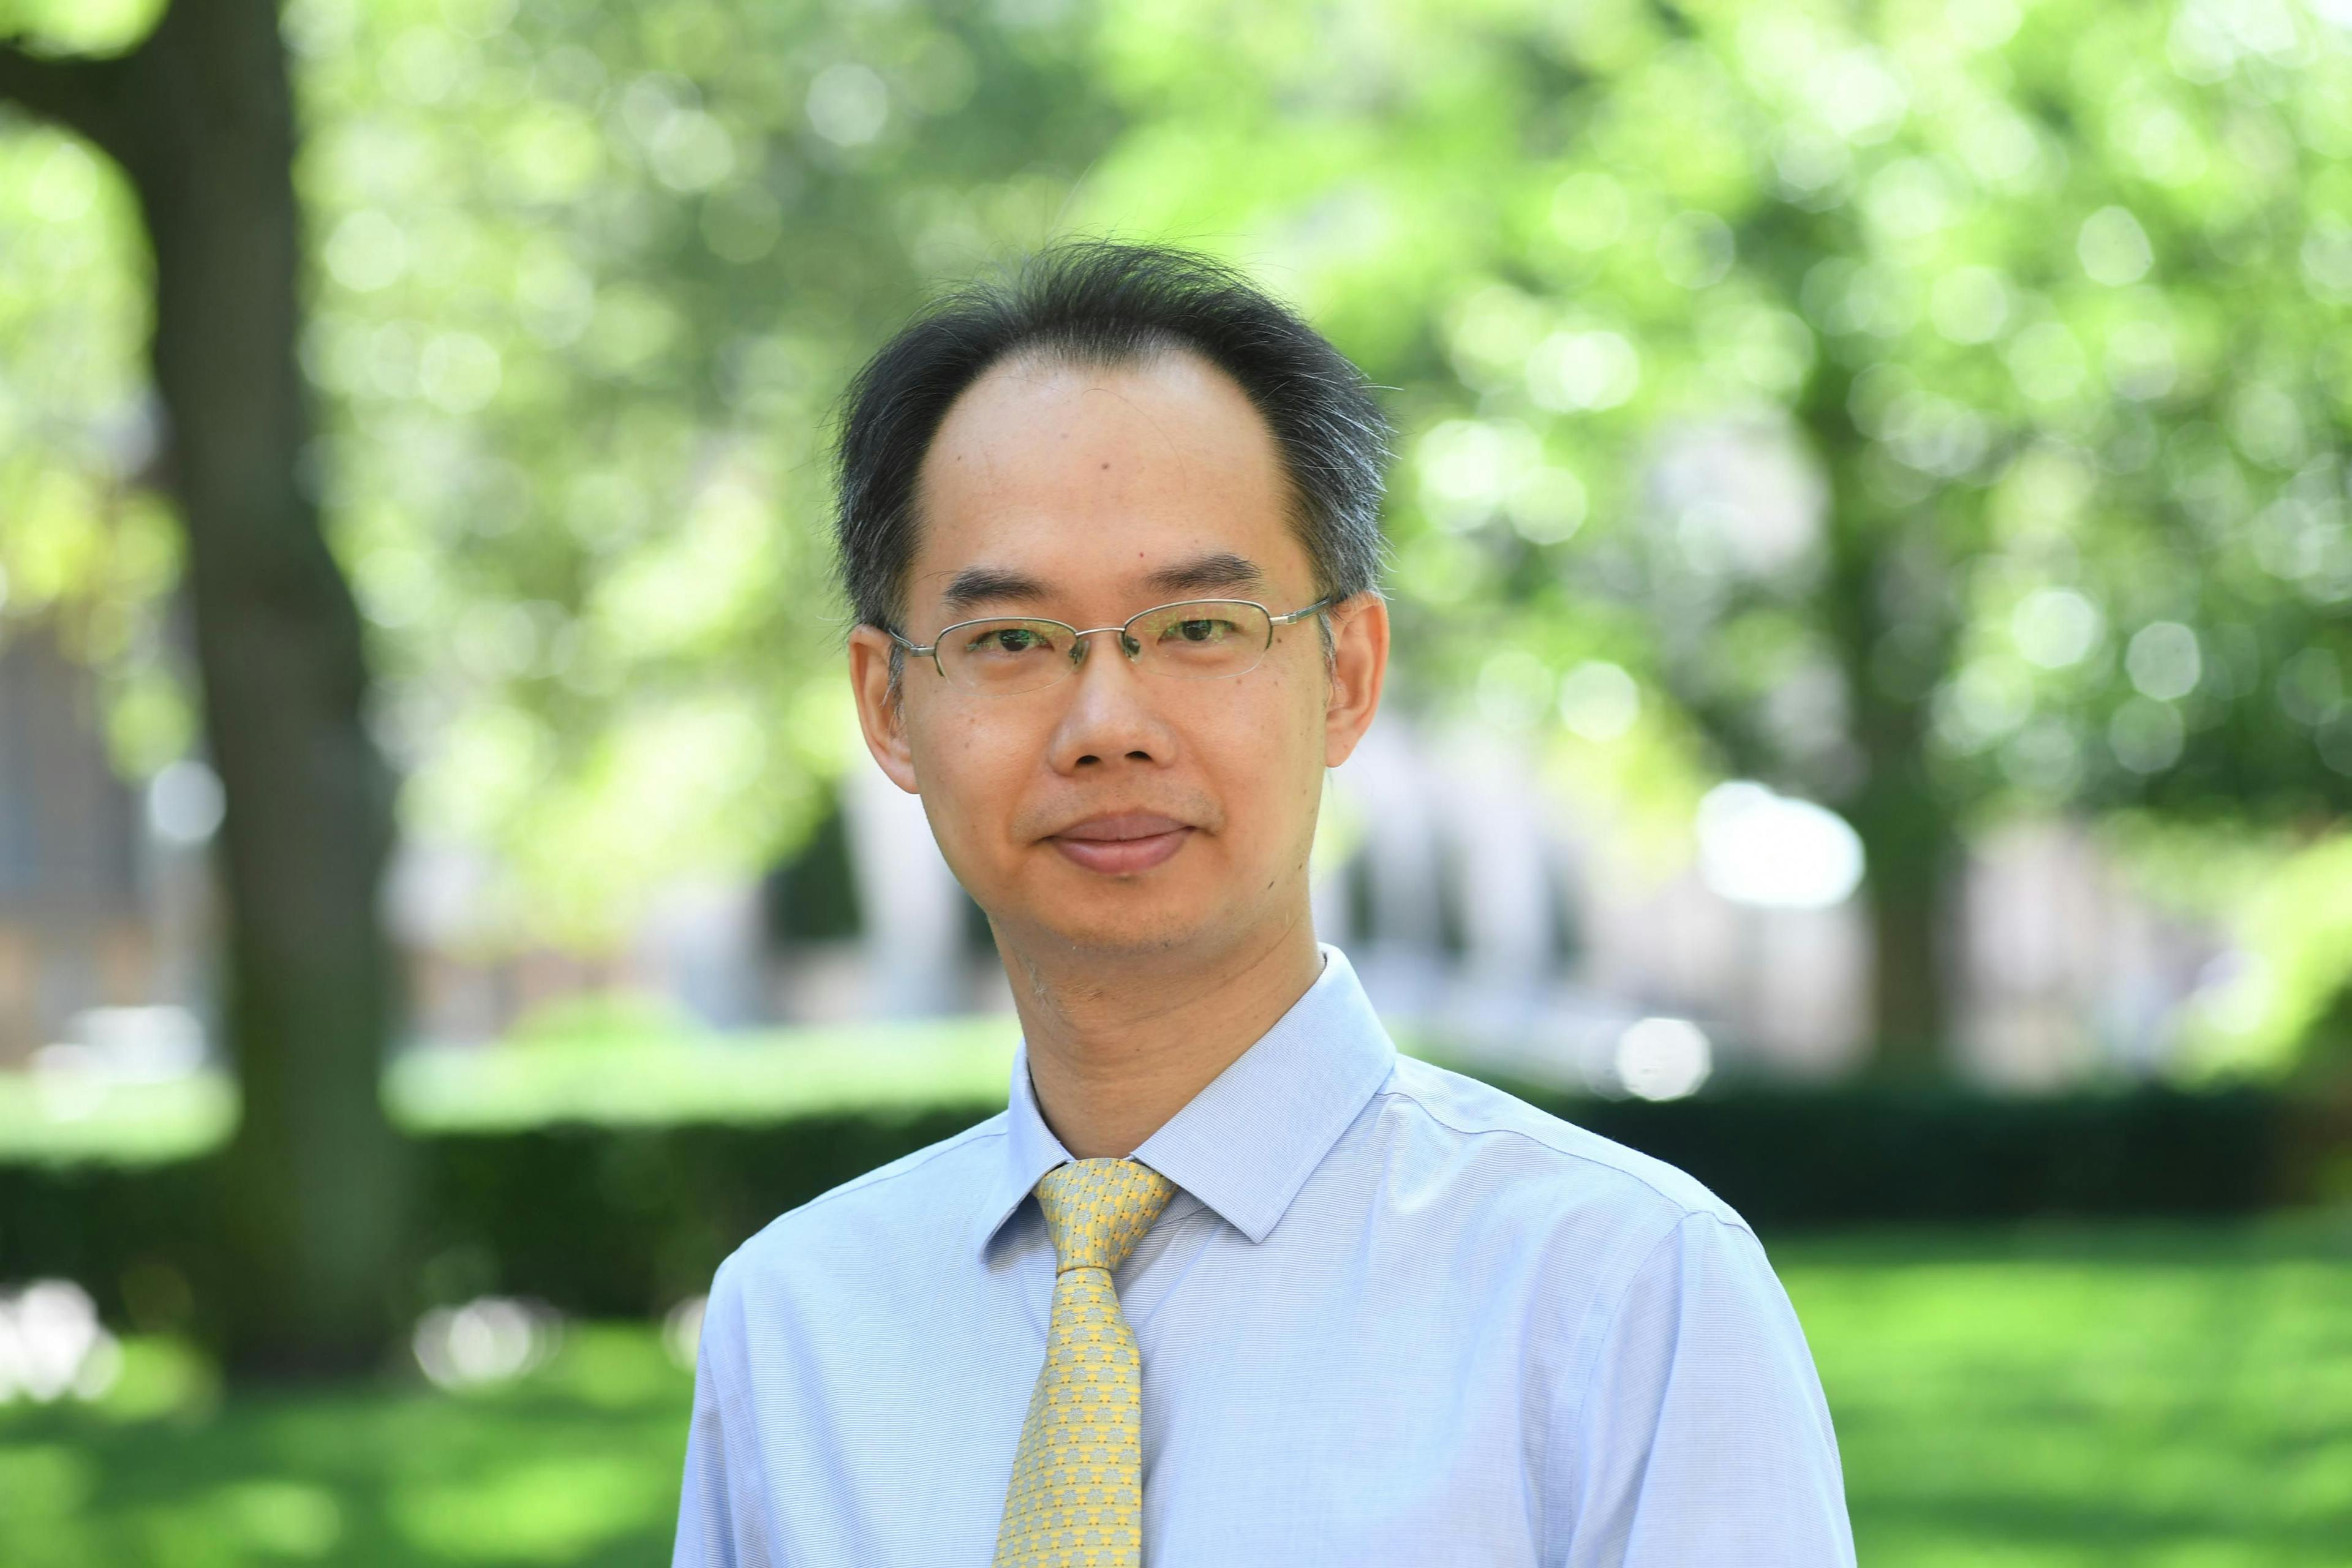 Dr. Wei Min